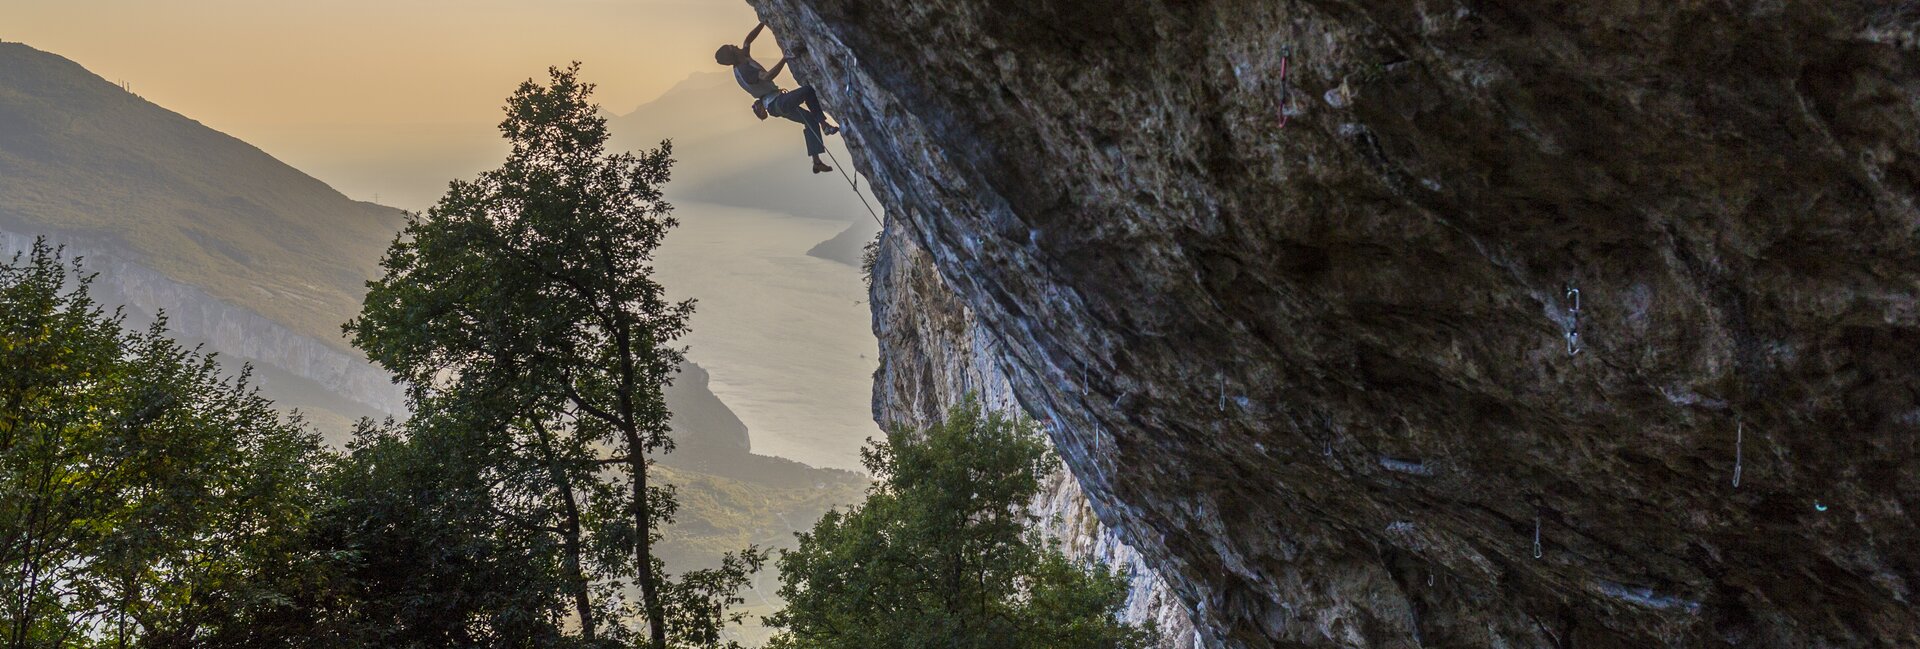 Things to do in lake Garda, climbing